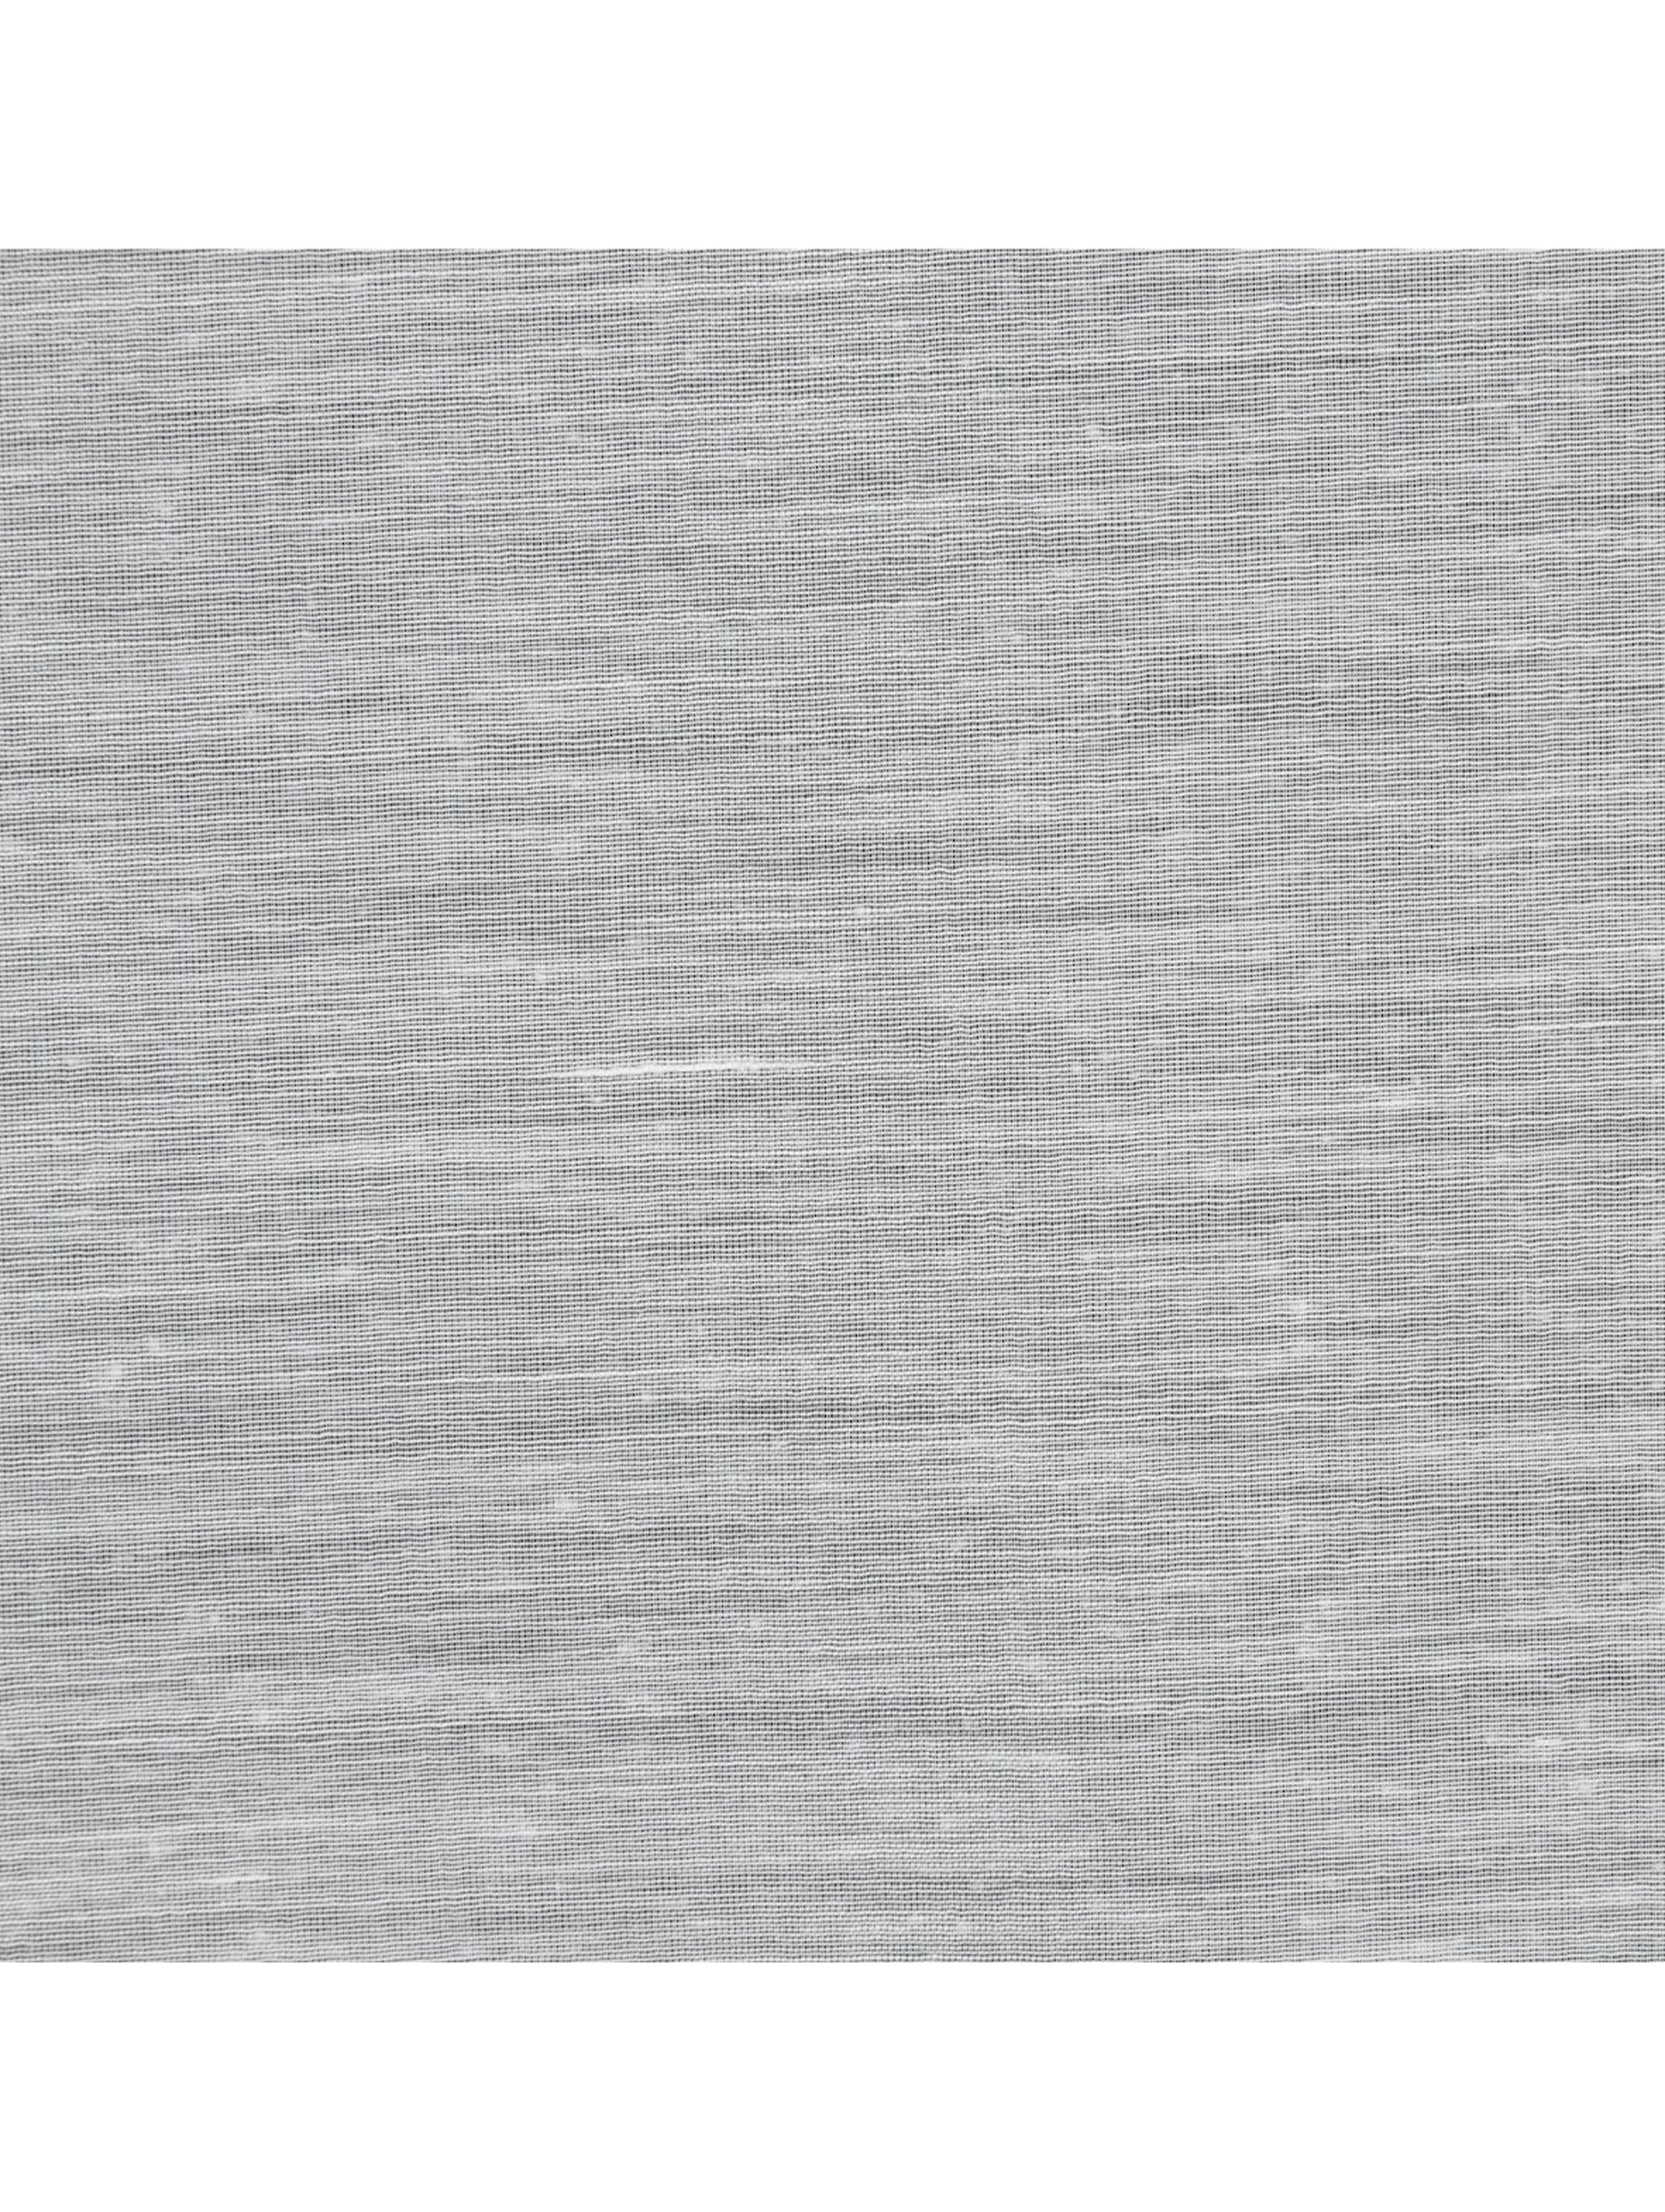 Biała firana na taśmie 140x270 cm